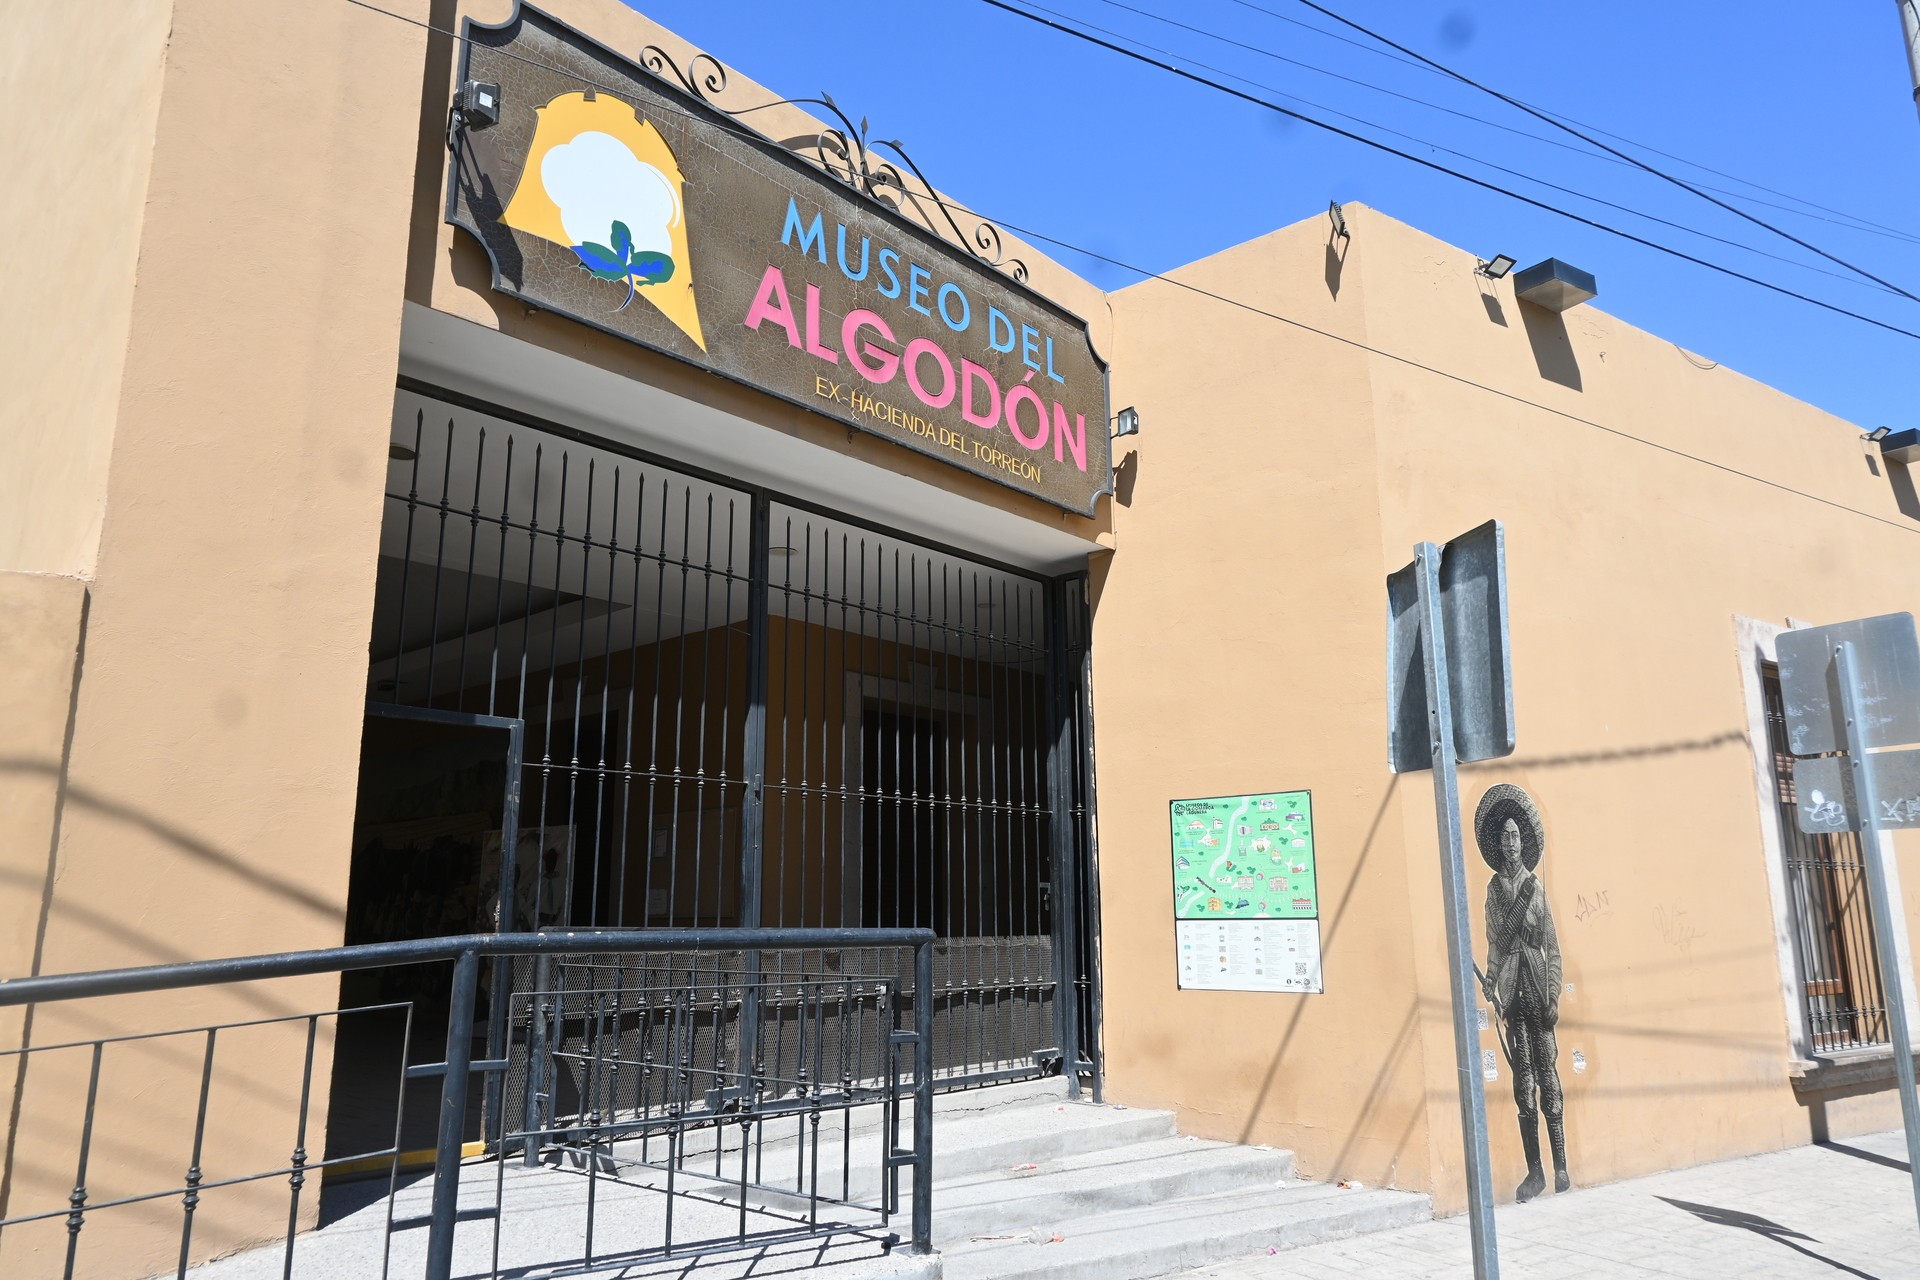 Por mantenimiento, cierran temporalmente el Museo del Algodón